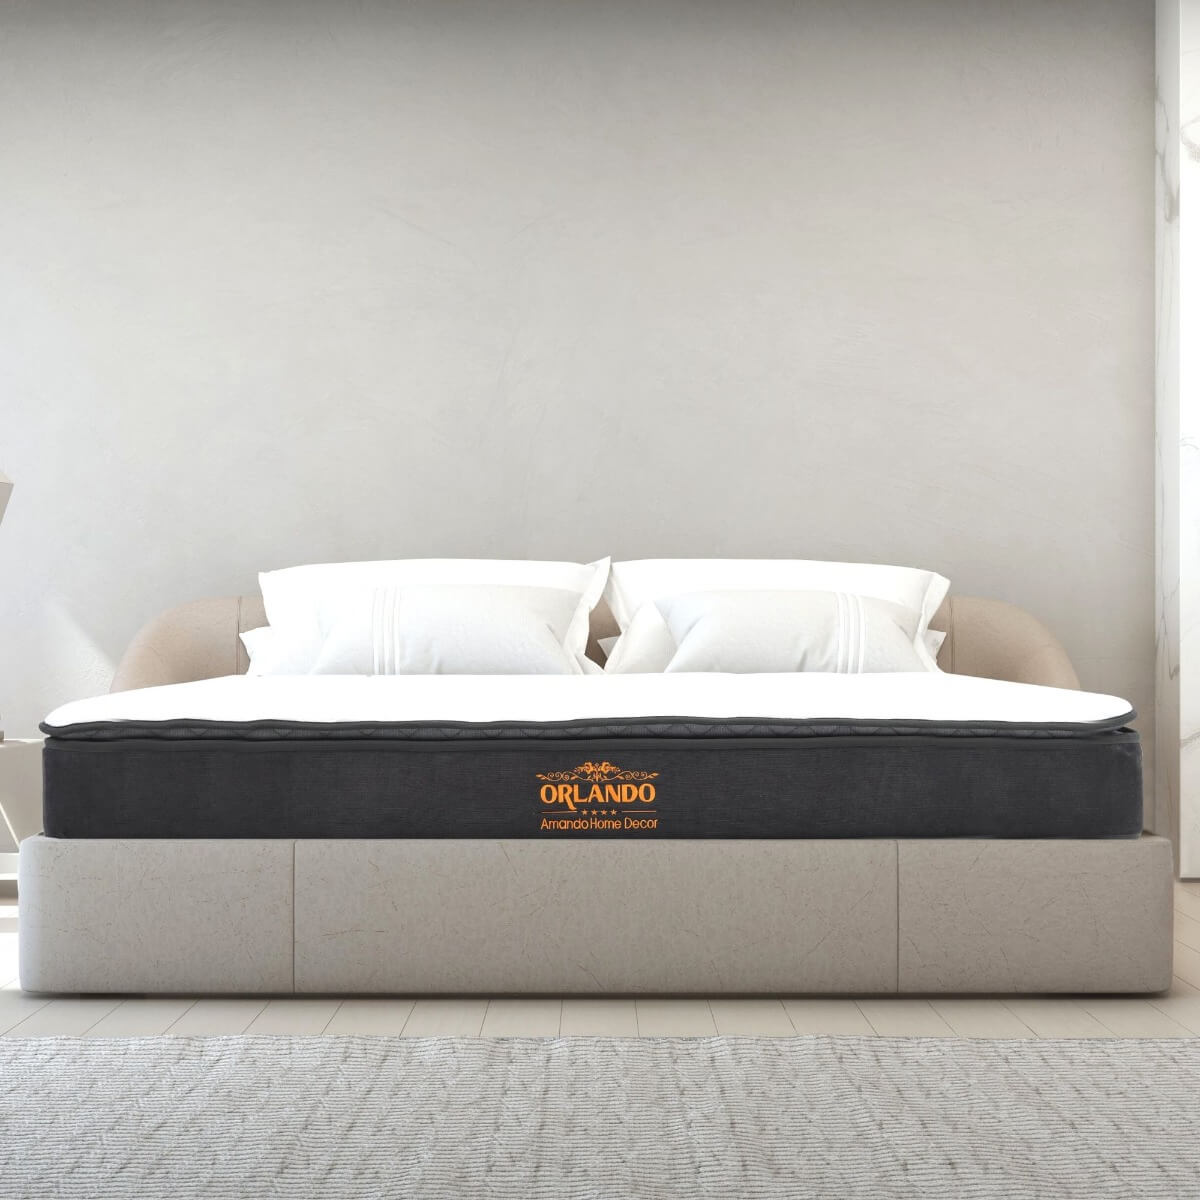 Với đệm giường Vua Nệm, bạn sẽ có cảm giác như đang được nằm trên mây mỗi khi thư giãn. Được sản xuất bằng công nghệ tiên tiến và chất liệu hữu cơ, đệm giường Vua Nệm đem lại sự thoải mái, tạo điều kiện tối ưu cho giấc ngủ đêm của bạn.